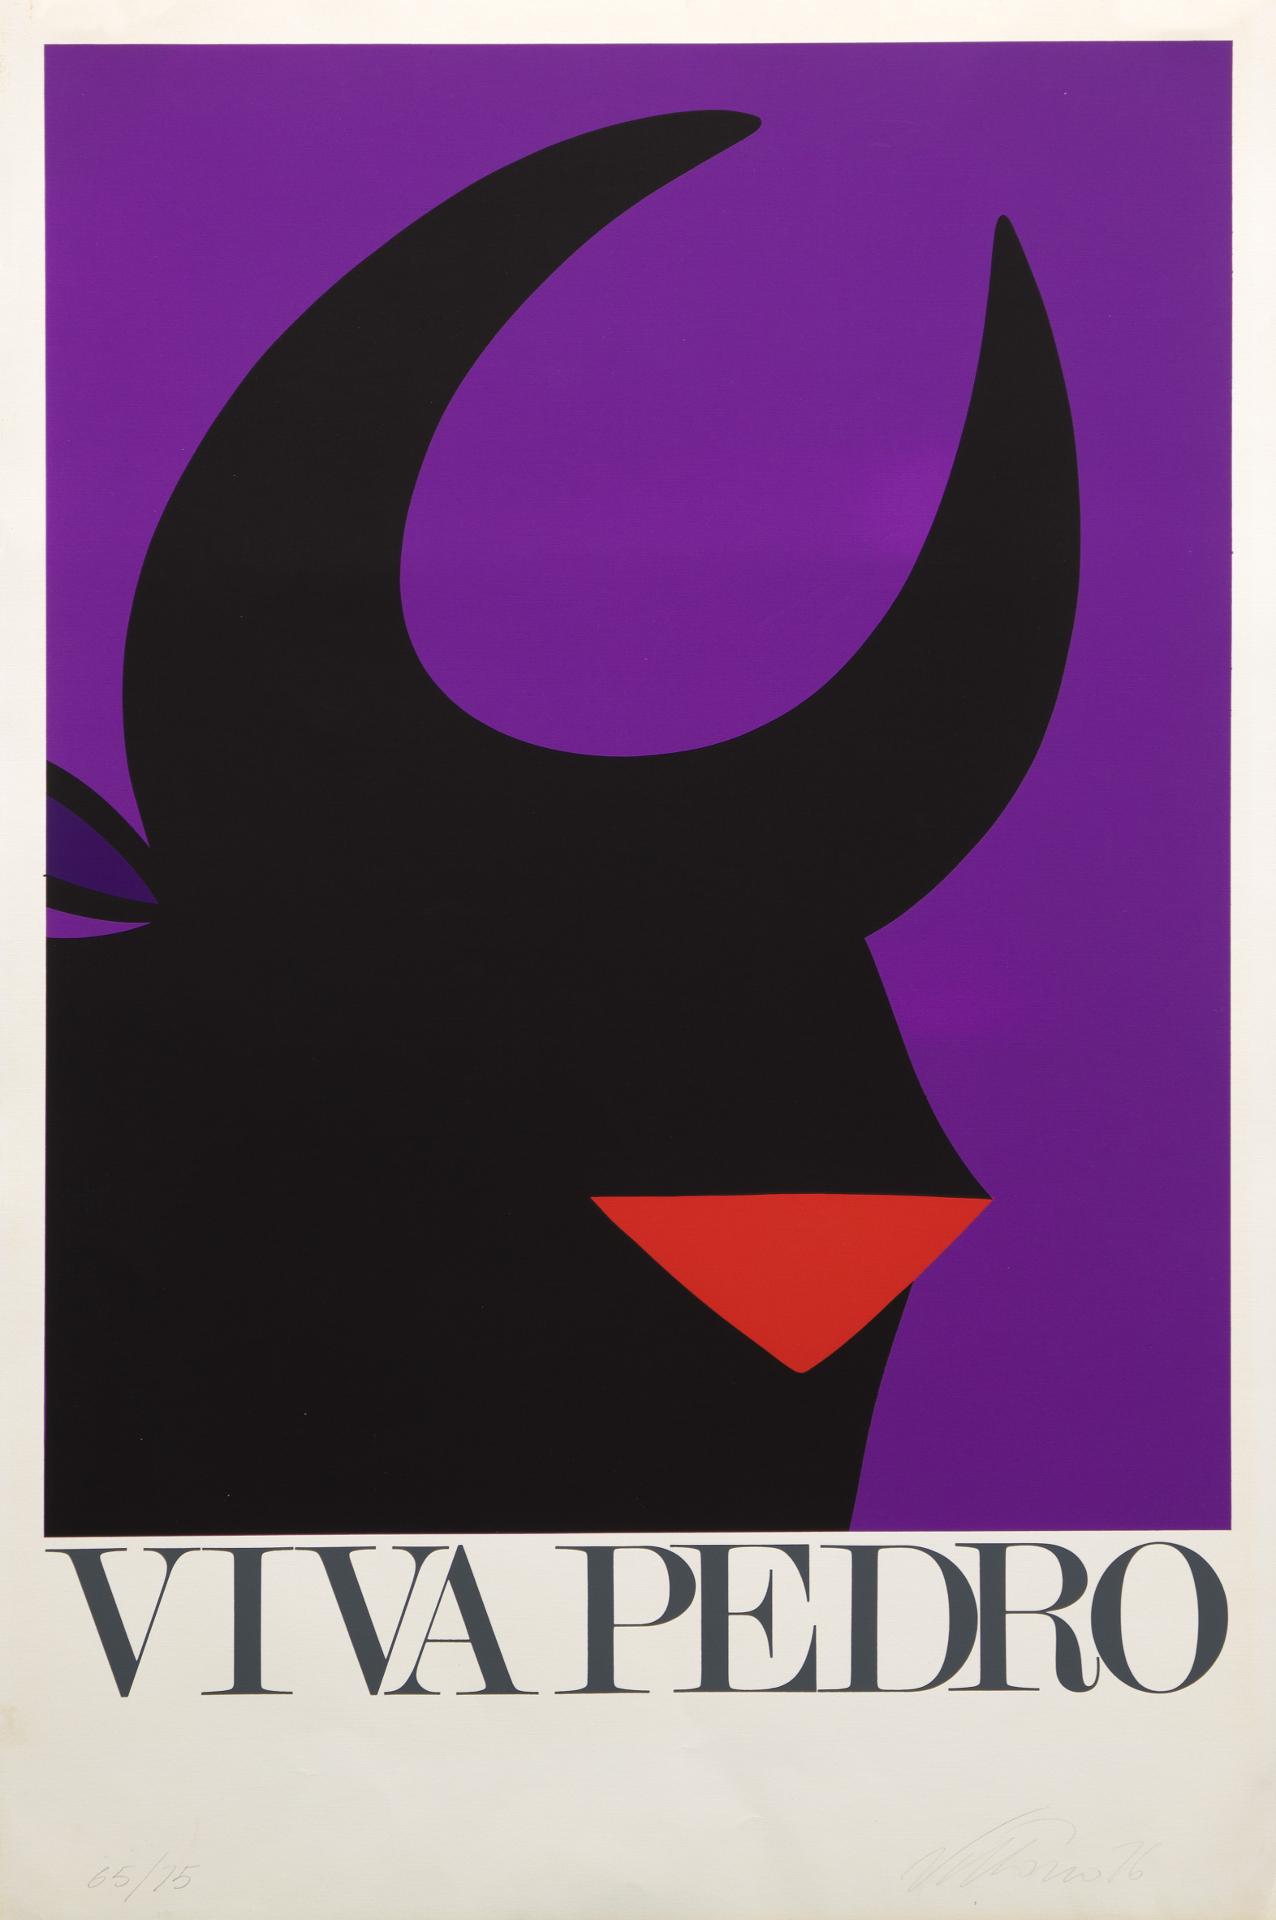 Vittorio Fiorucci (1932-2008) - Viva Pedro, 1976